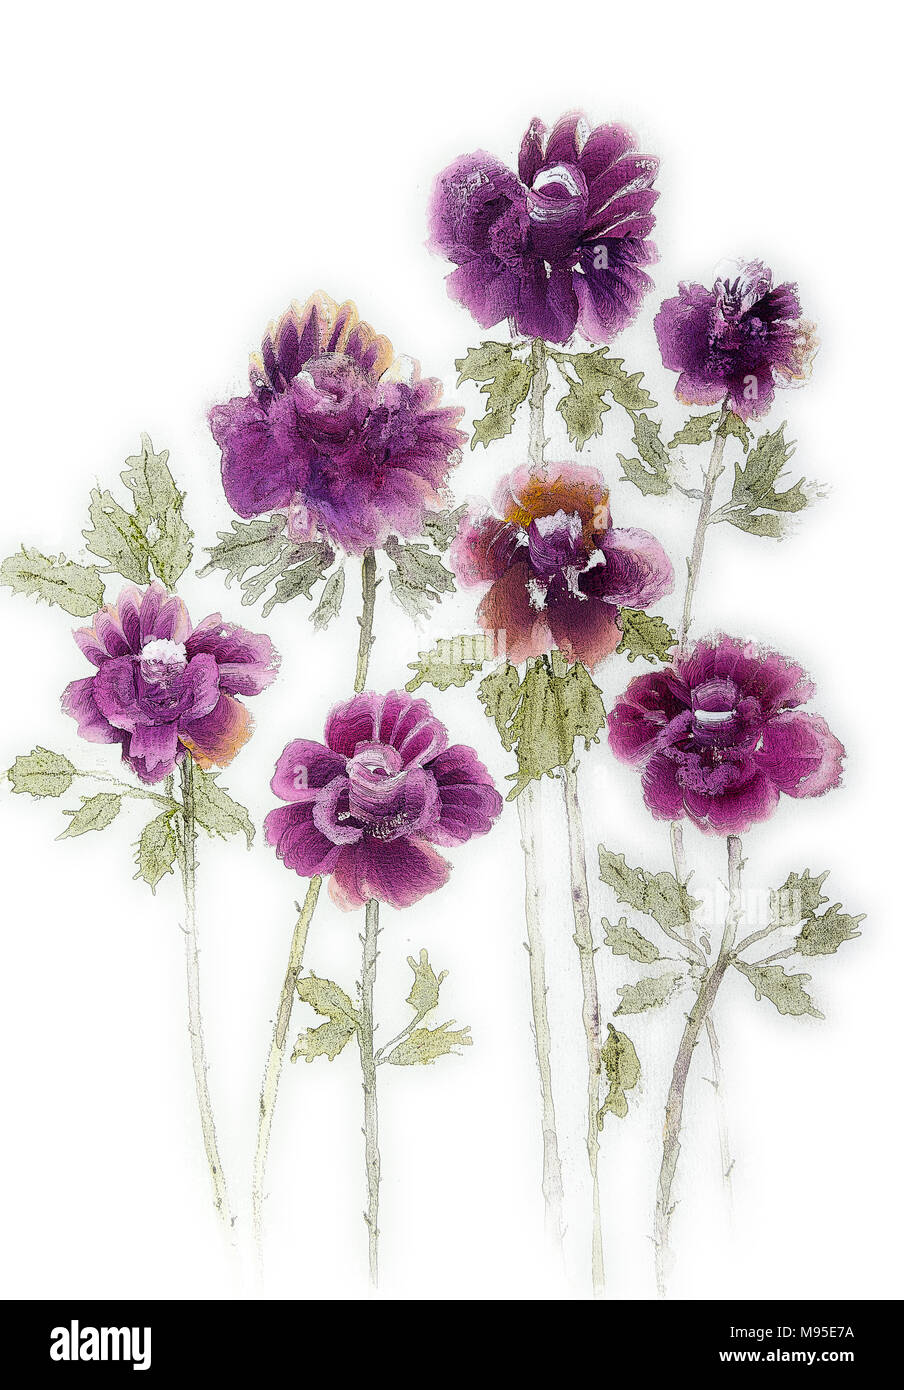 Sept roses violet sur fond blanc. La technique du badigeonnage près des bords donne un effet de flou en raison de la modification de la rugosité de la p Banque D'Images